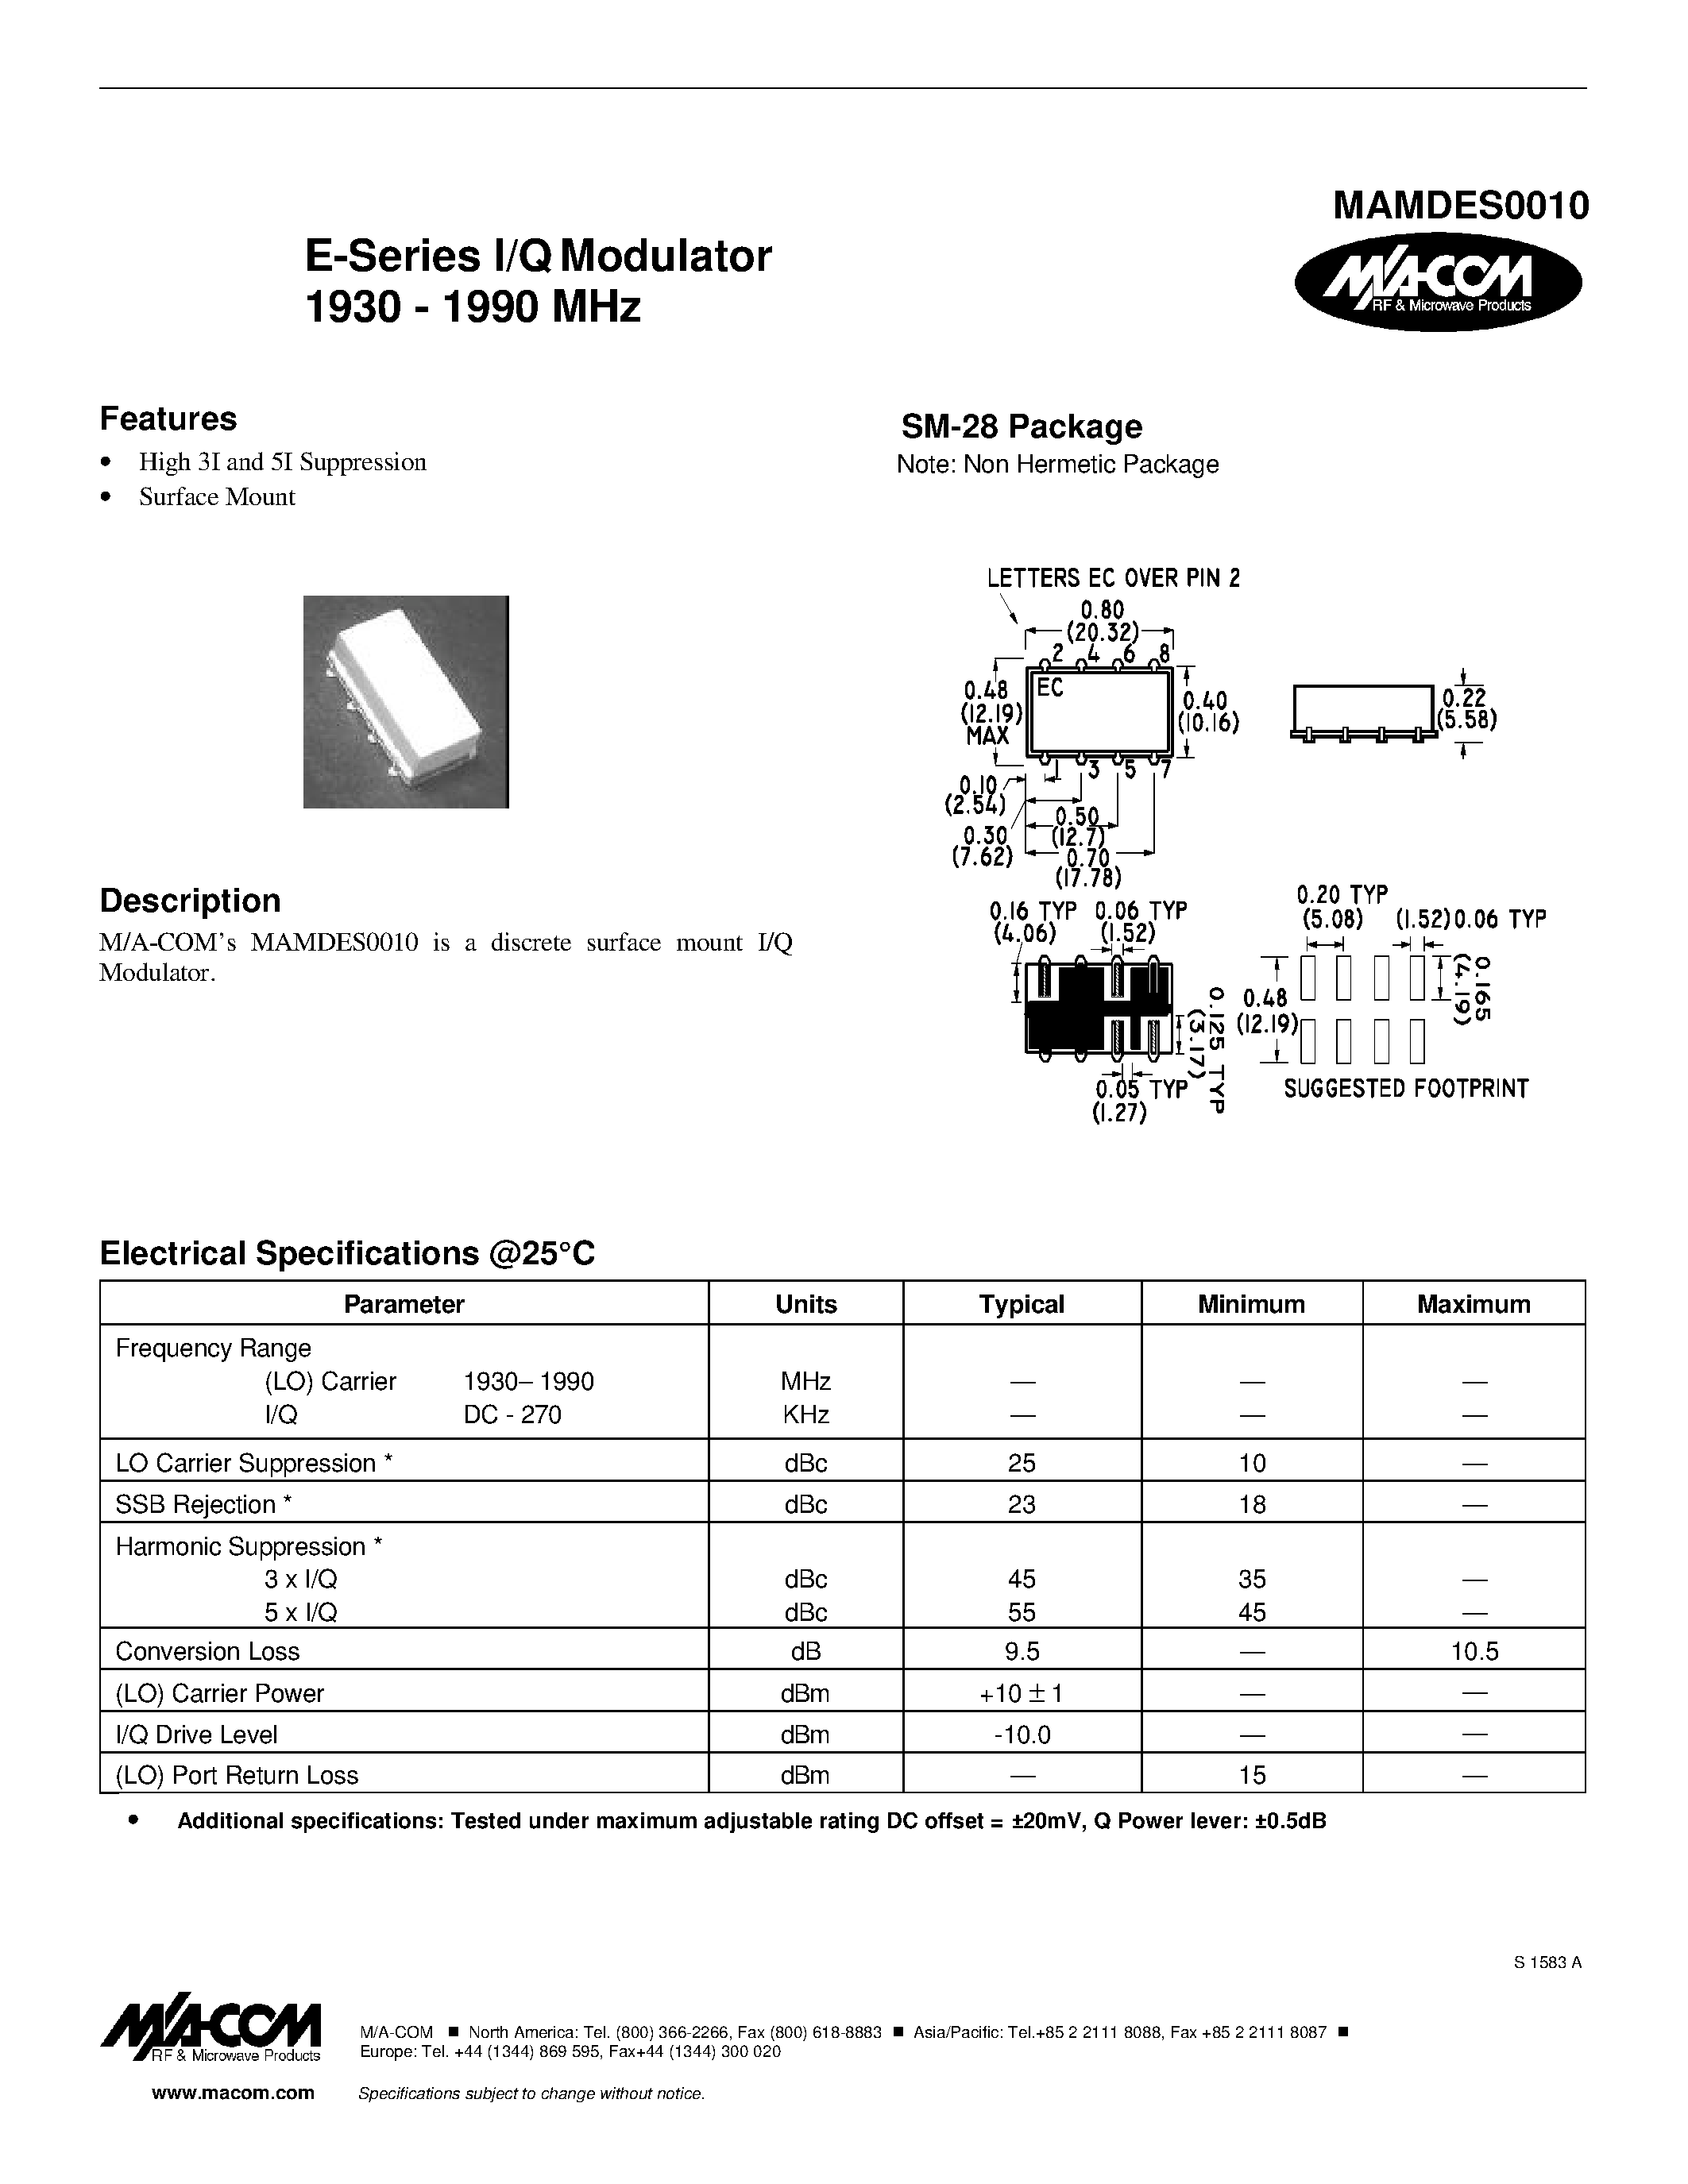 Datasheet MAMDES0010 - E-Series I/Q Modulator 1930 - 1990 MHz page 1